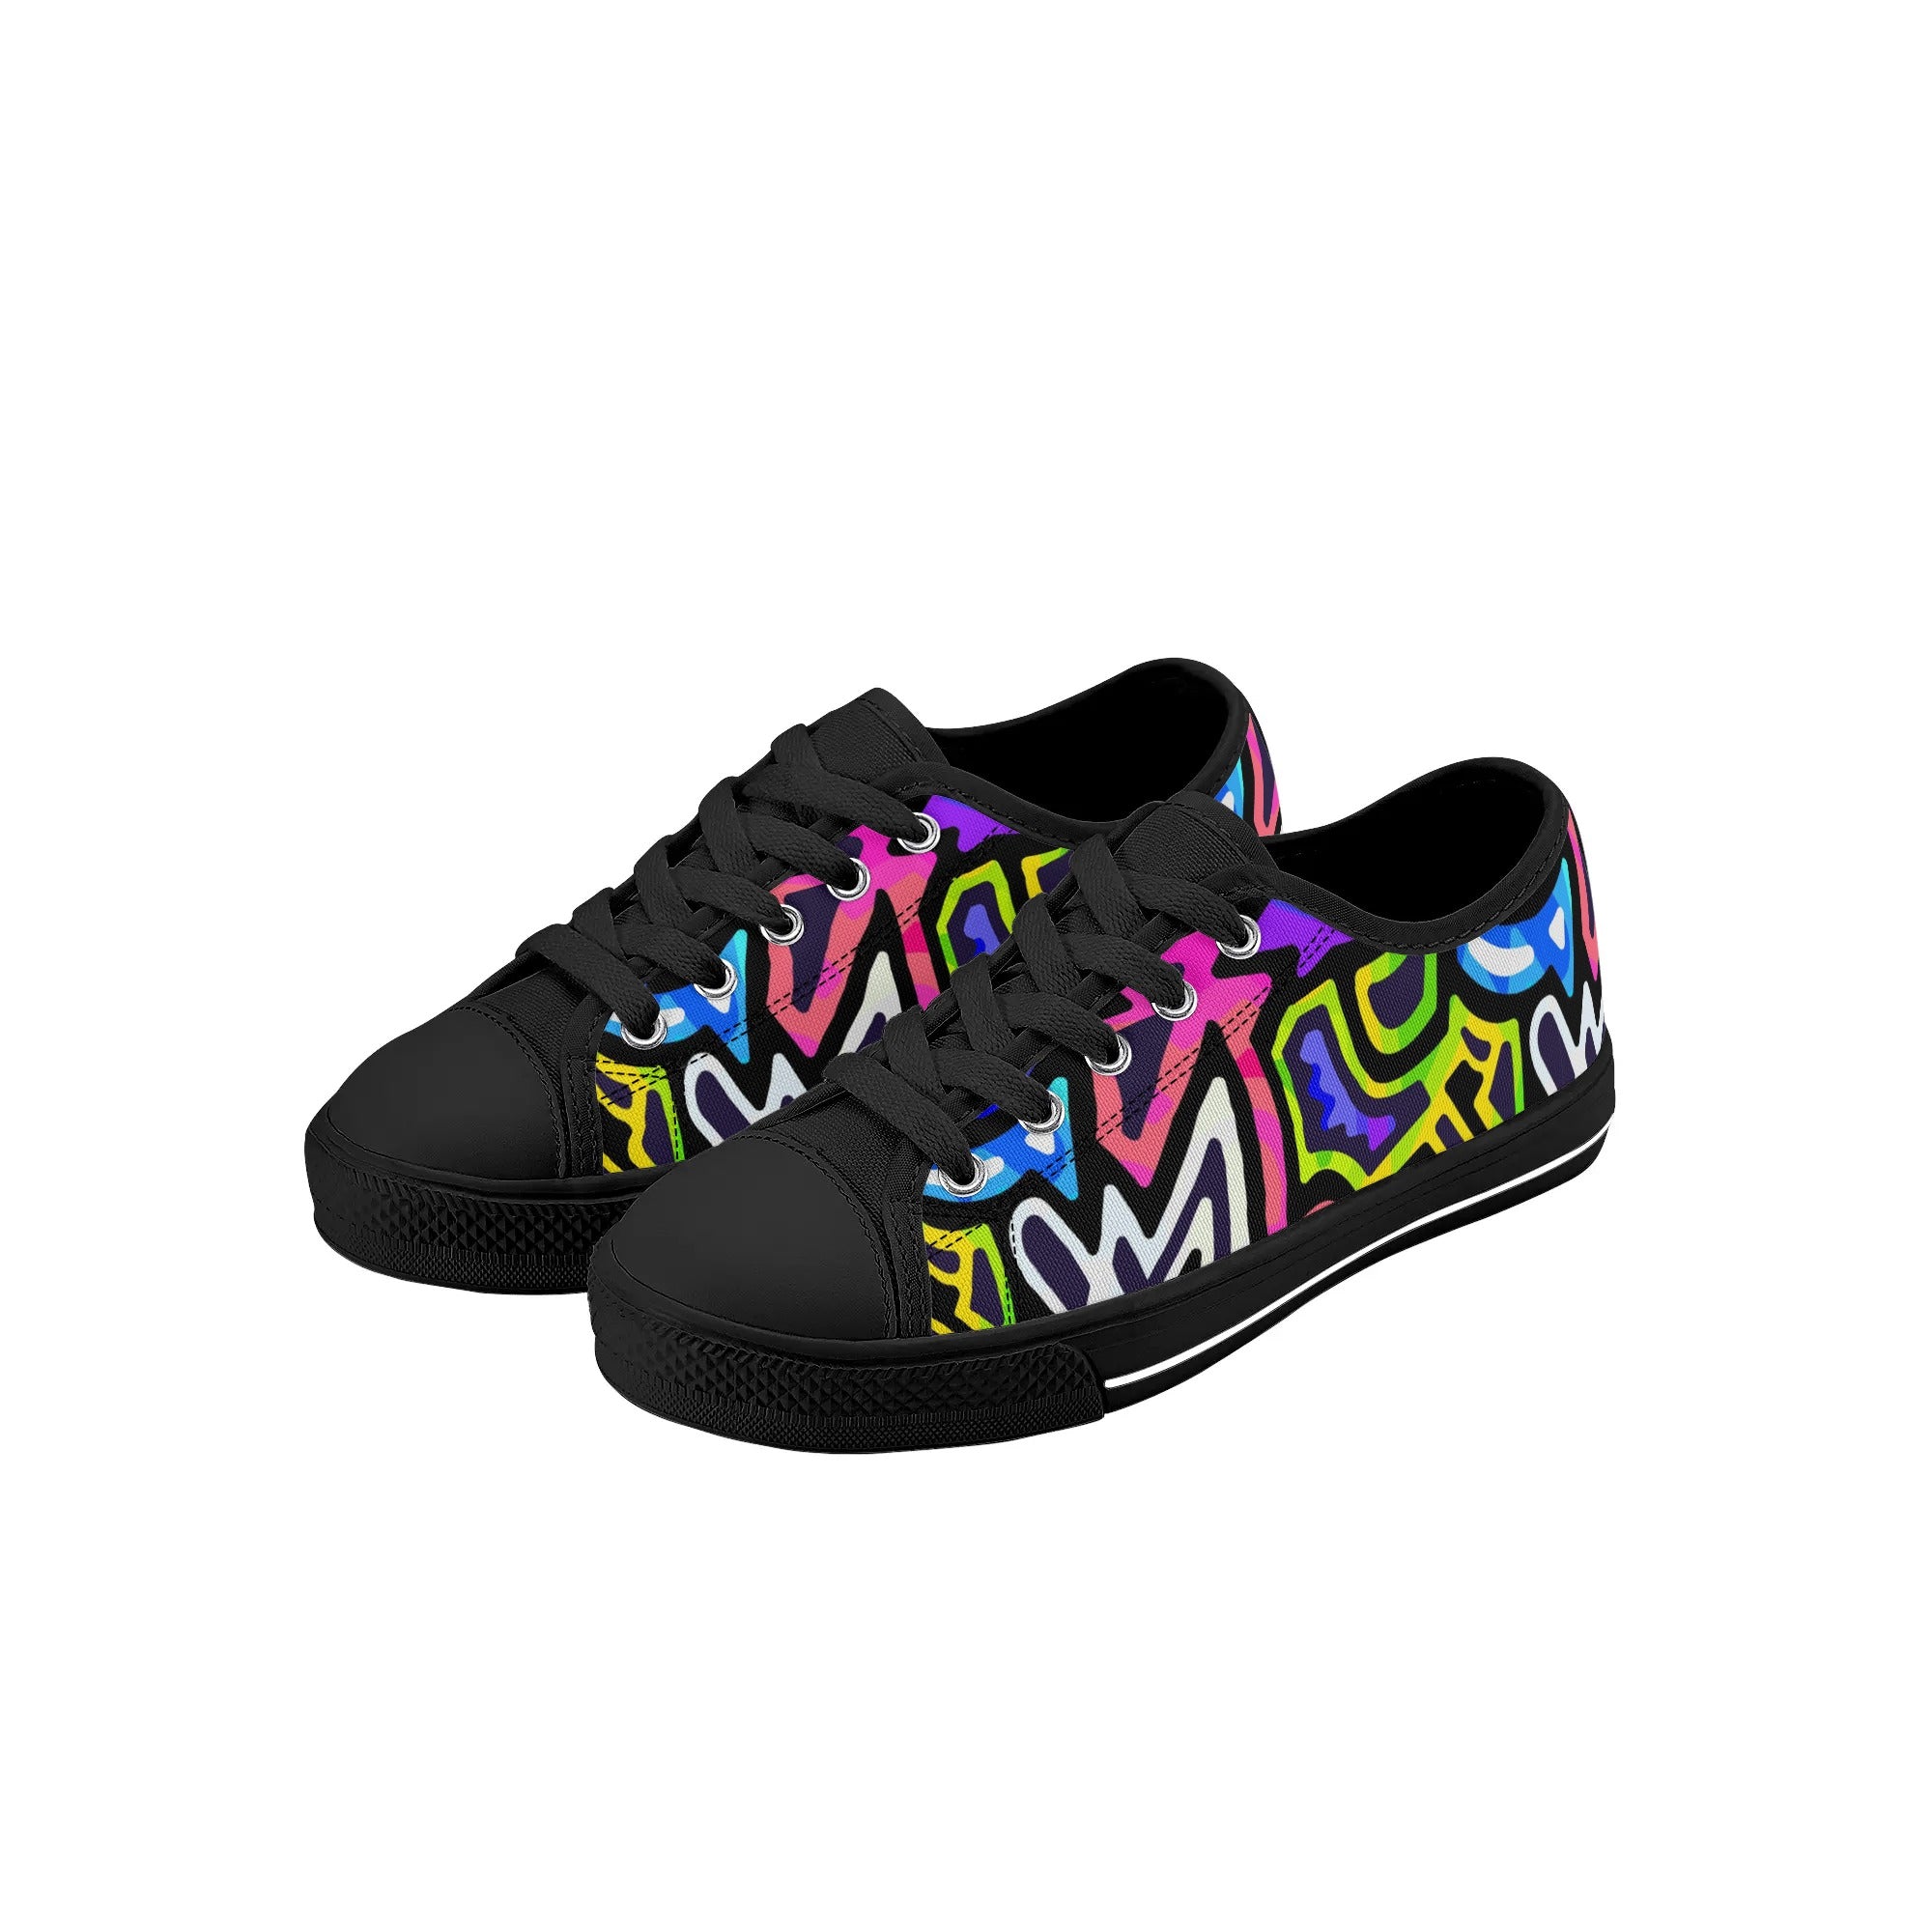 Chaussures basses en toile pour enfants - Neon Graffiti